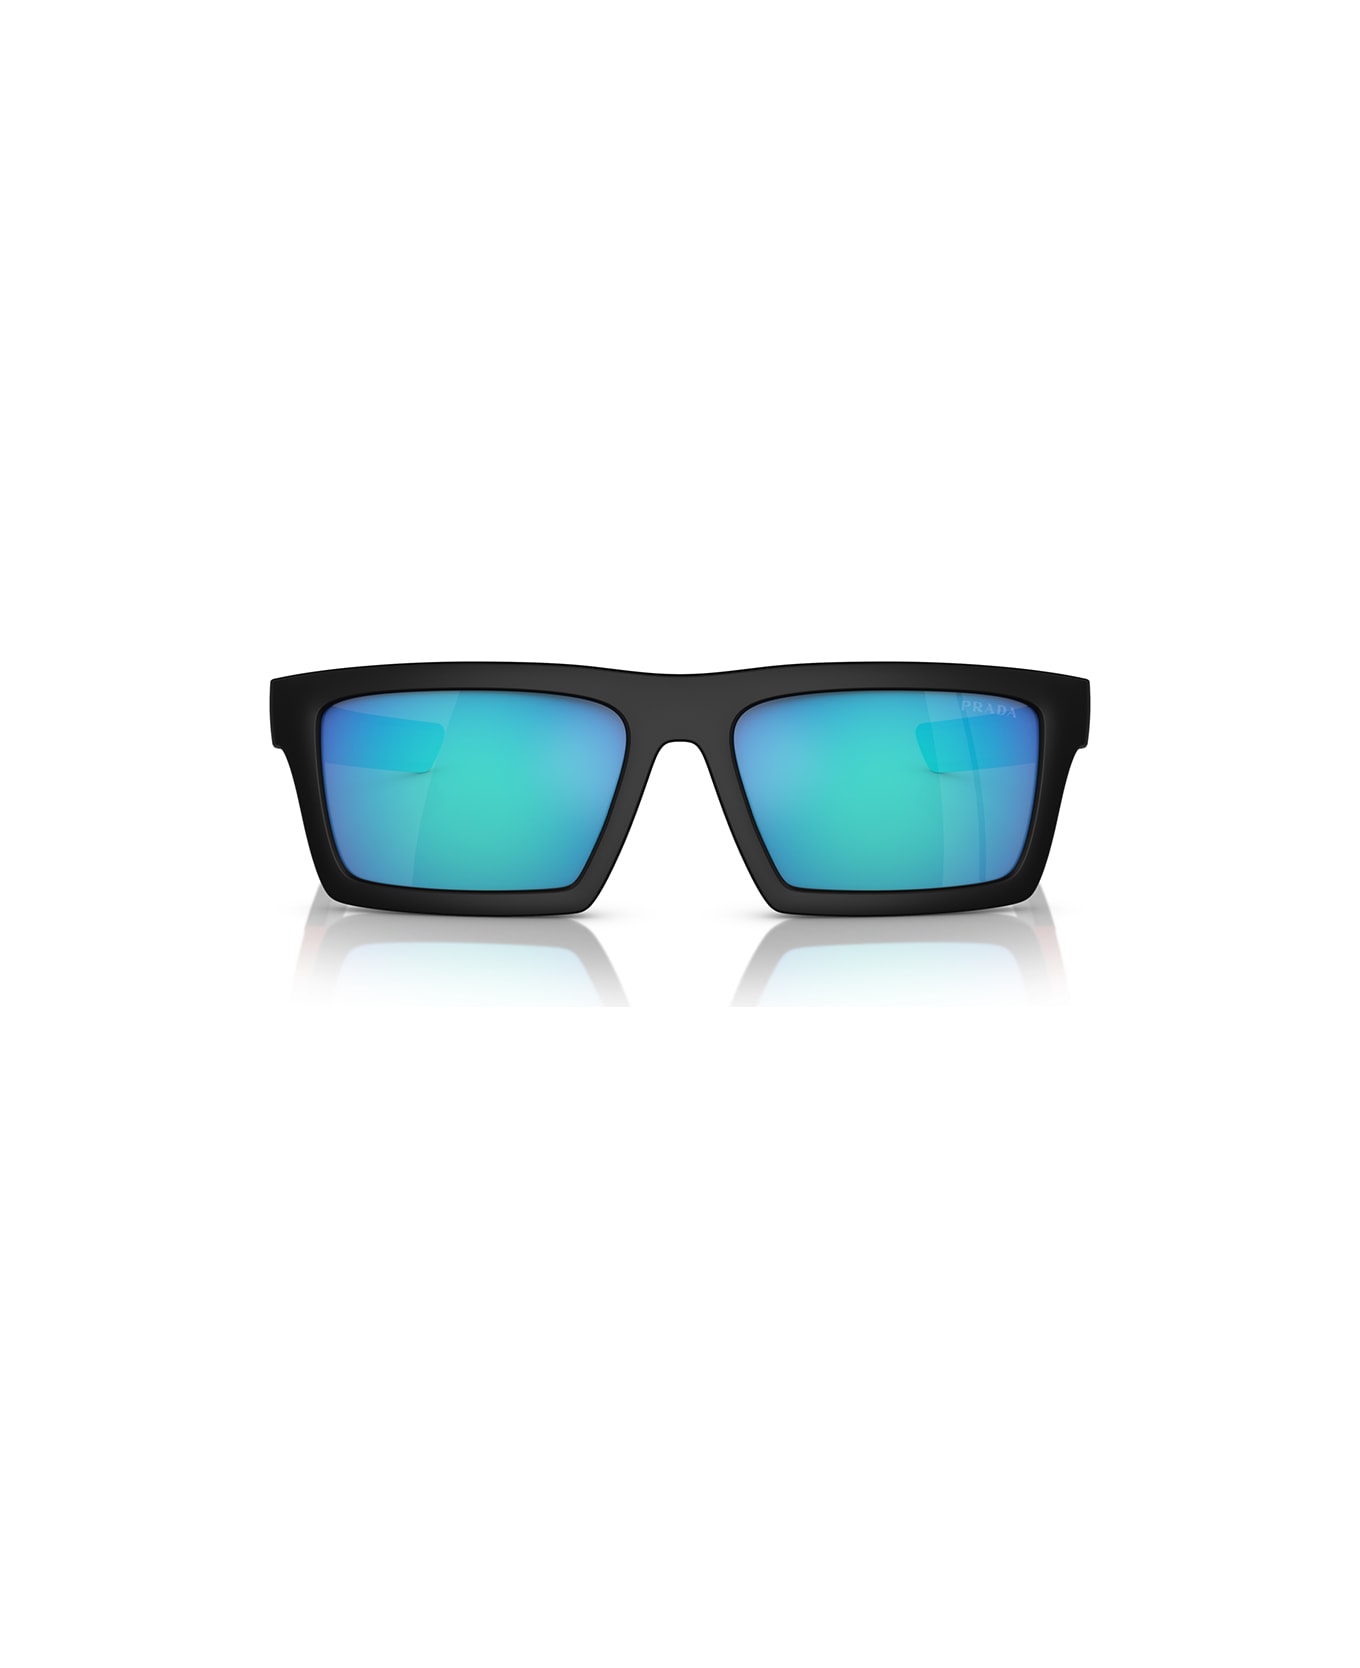 Prada Linea Rossa Sunglasses - Nero/Blu specchiato